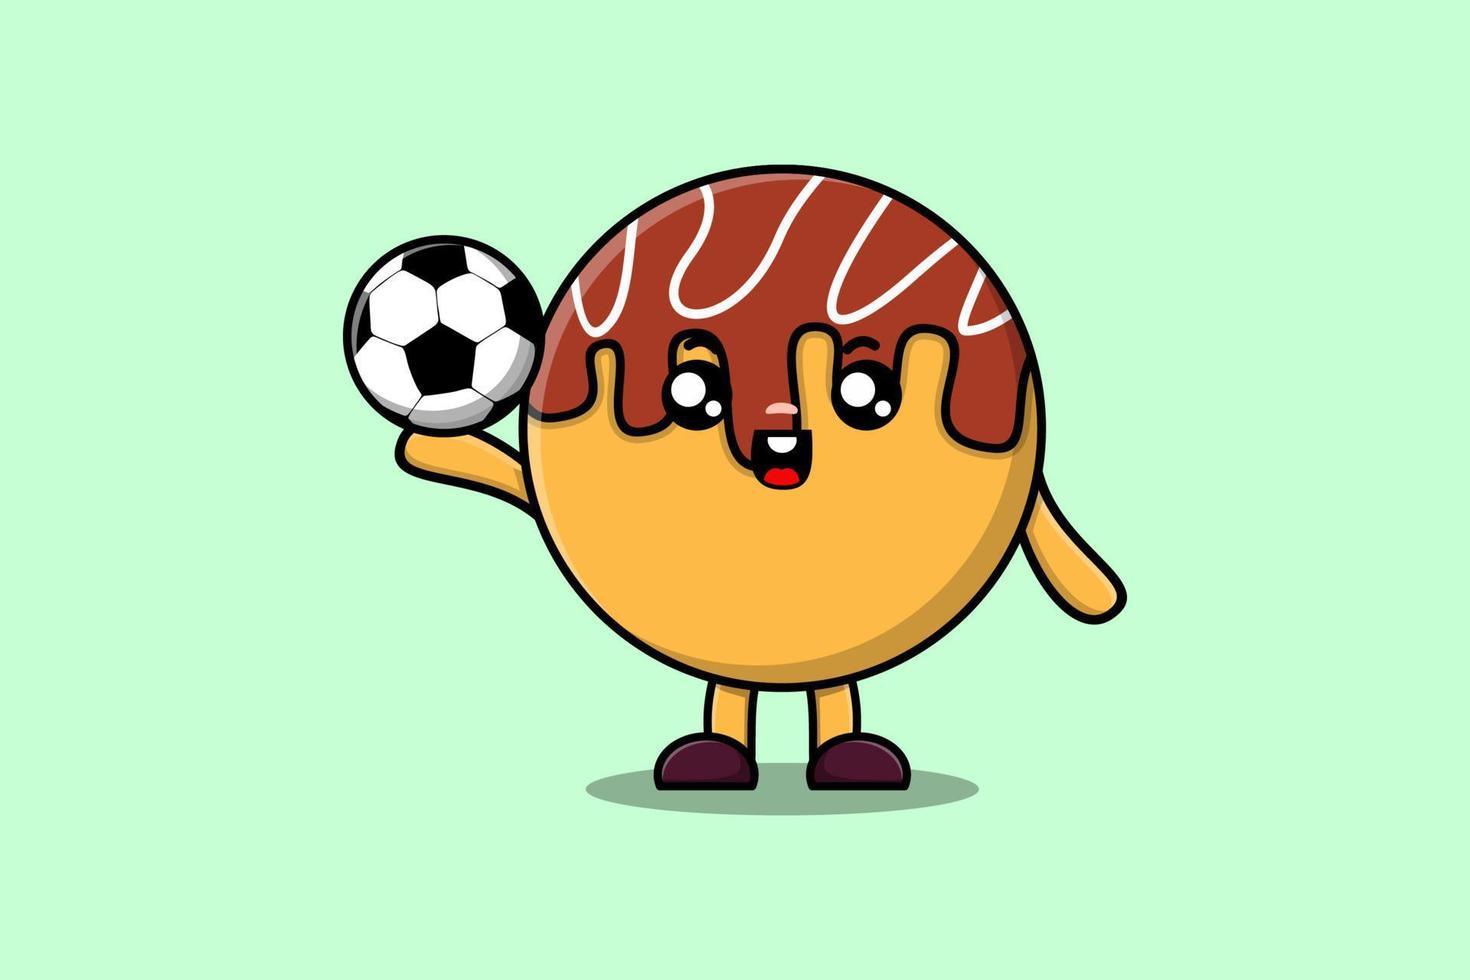 schattig tekenfilm takoyaki karakter spelen Amerikaans voetbal vector